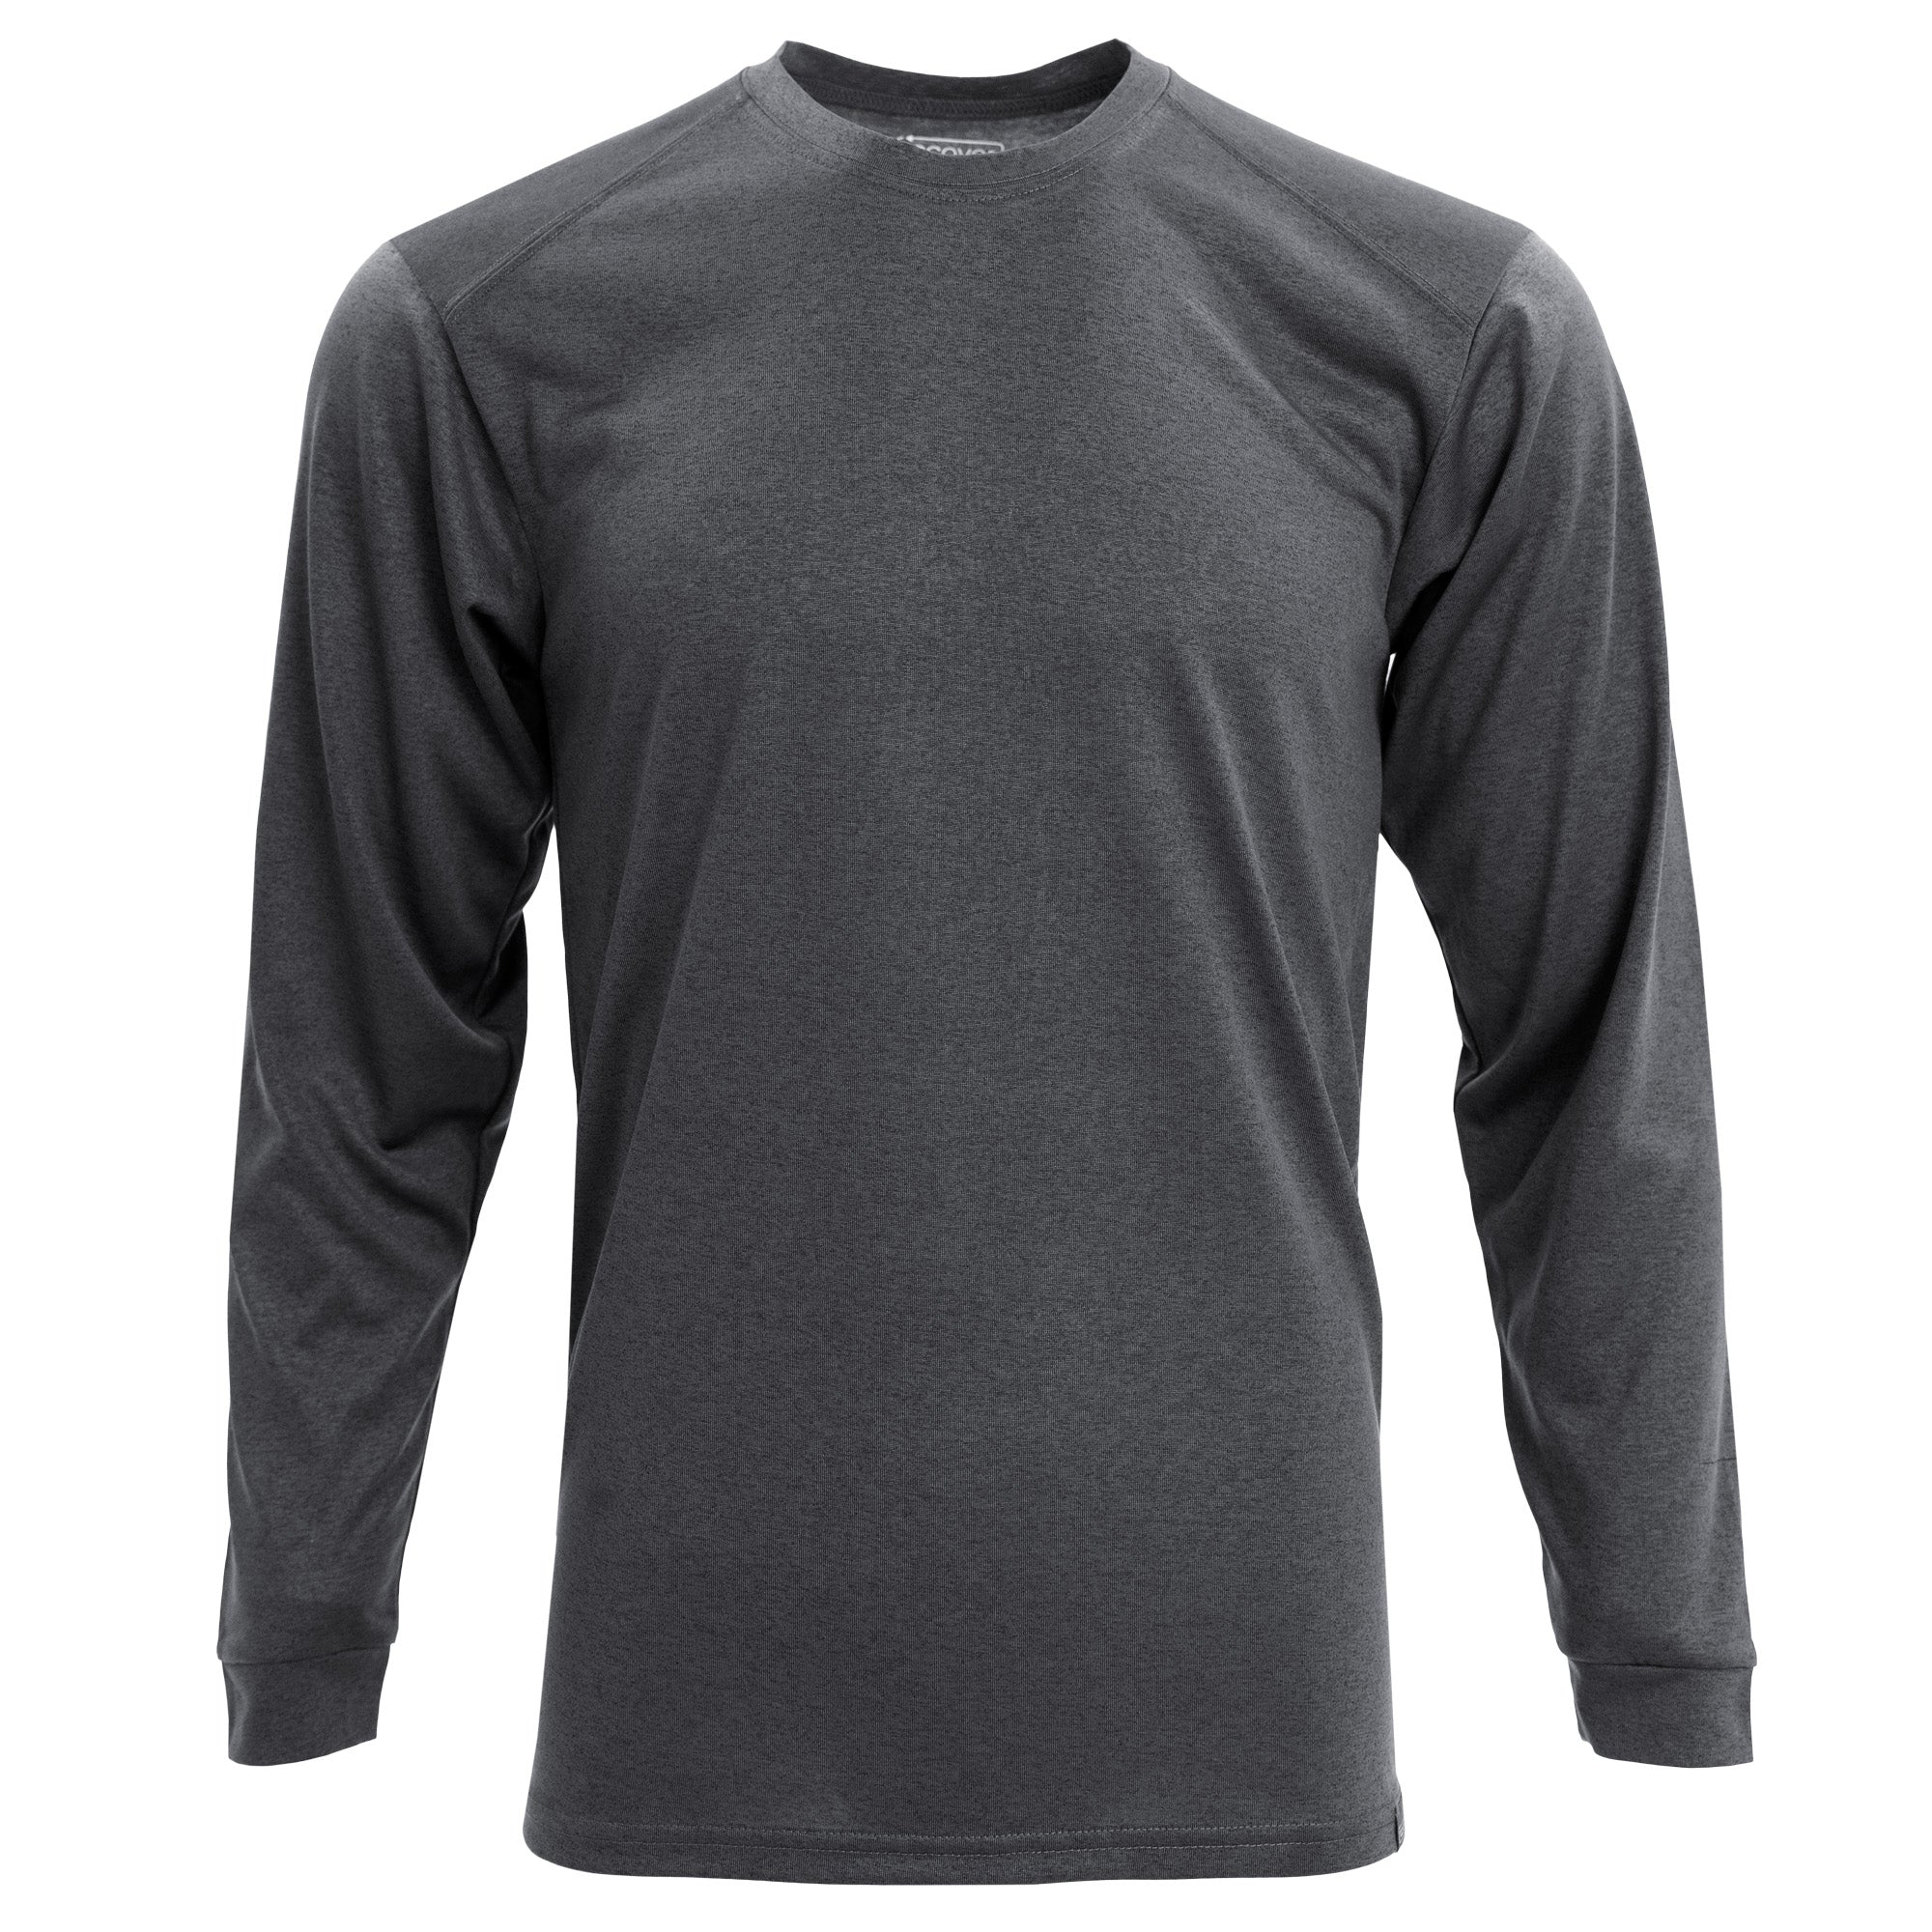 Skins Ry400 Top Long Sleeve T-Shirt Black